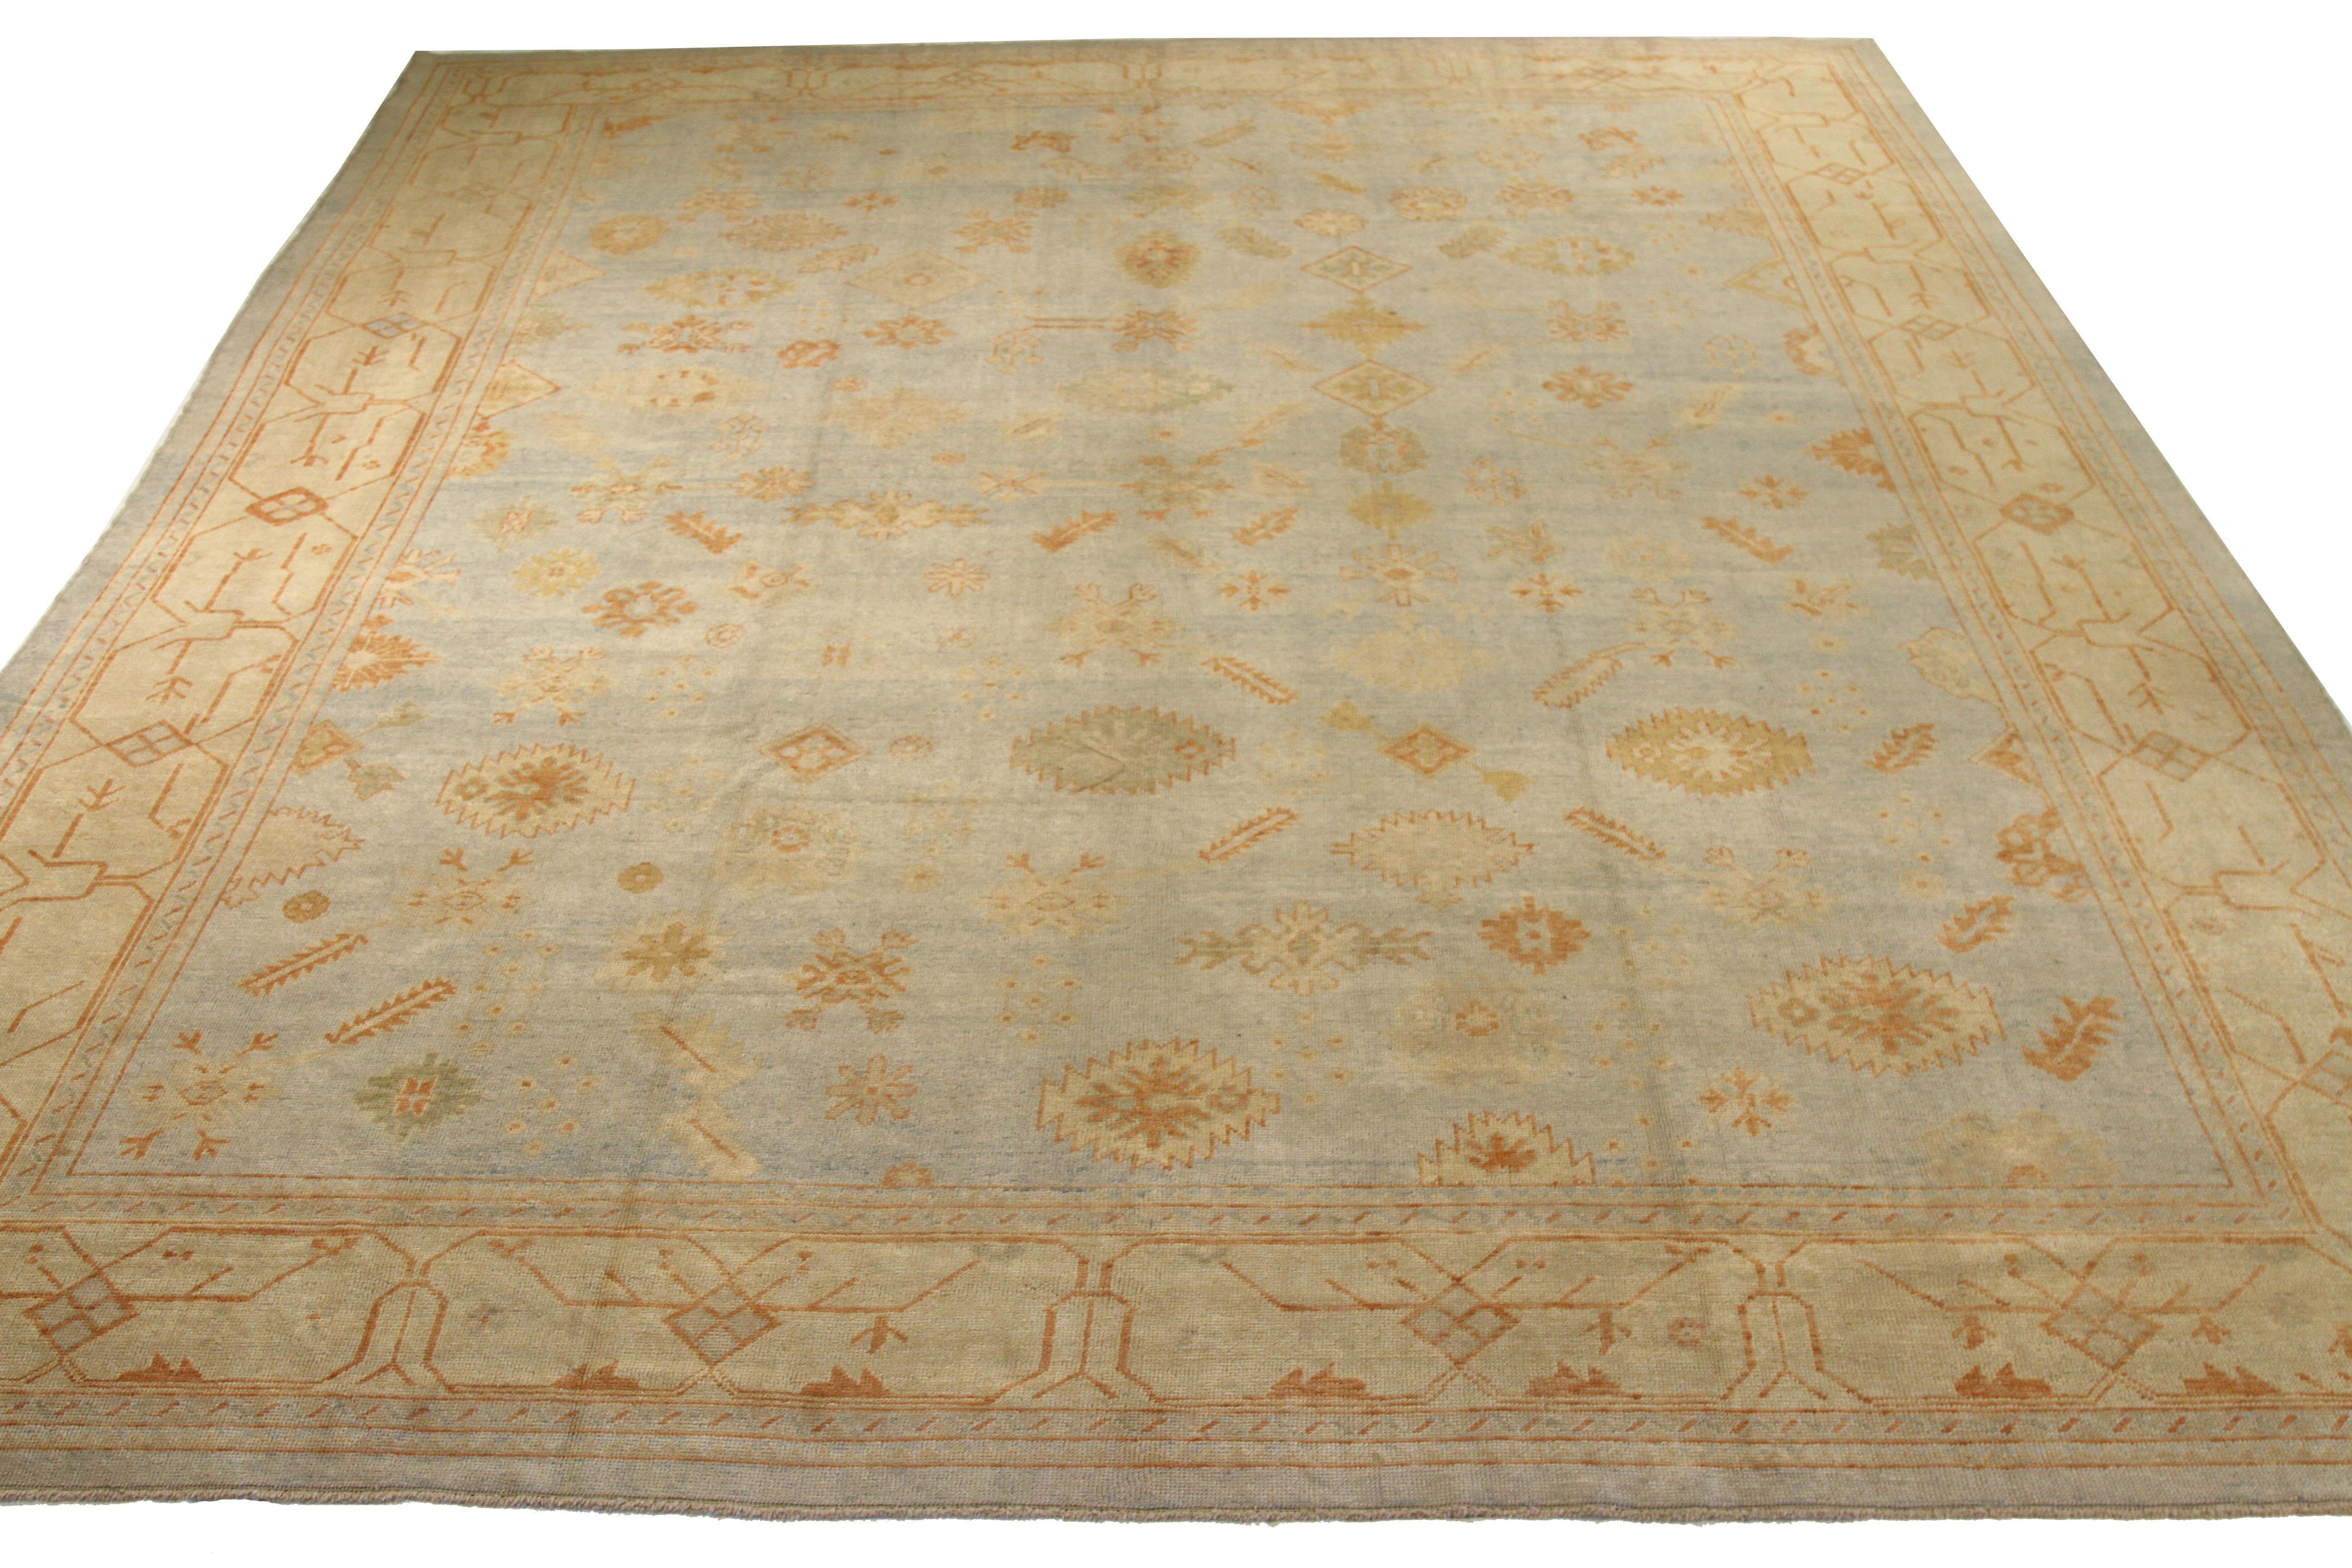 Moderner handgewebter türkischer Teppich des 21. Jahrhunderts aus feiner Wolle und natürlichen pflanzlichen Farbstoffen, die für Menschen und Haustiere unbedenklich sind. Dieses schöne Stück zeichnet sich durch ein reiches Feld mit floralen Details